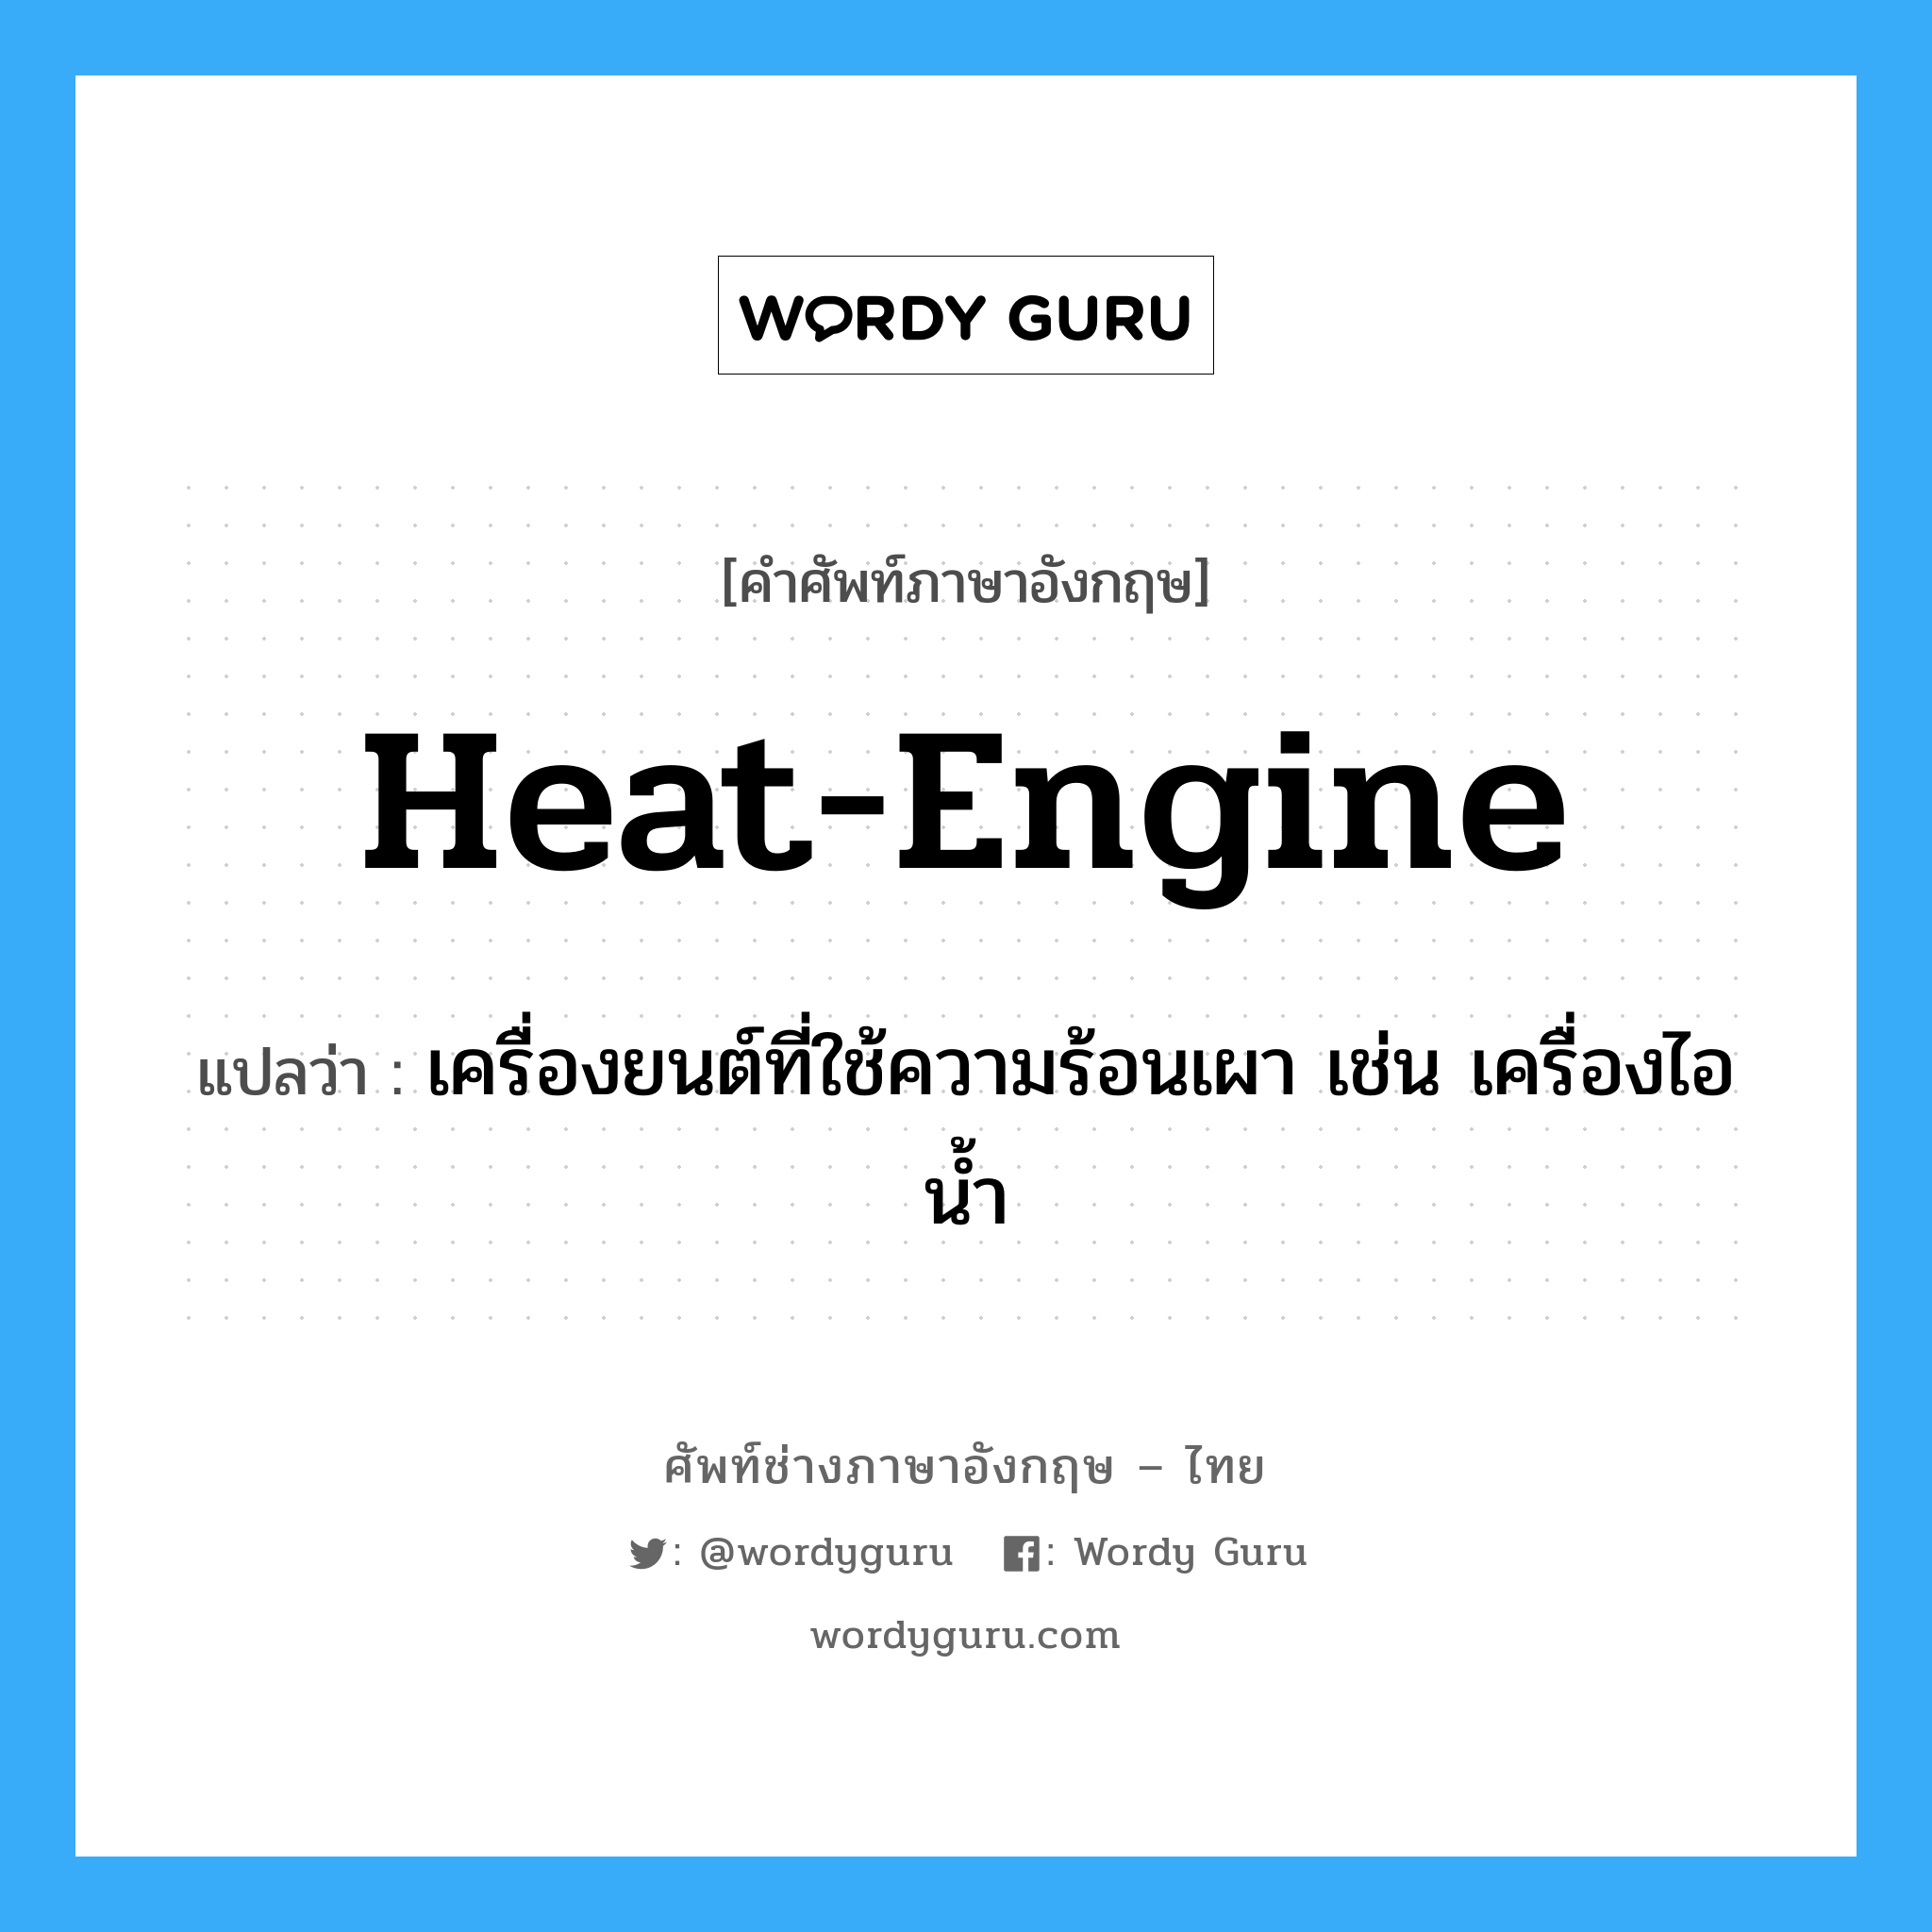 heat engine แปลว่า?, คำศัพท์ช่างภาษาอังกฤษ - ไทย heat-engine คำศัพท์ภาษาอังกฤษ heat-engine แปลว่า เครื่องยนต์ที่ใช้ความร้อนเผา เช่น เครื่องไอน้ำ